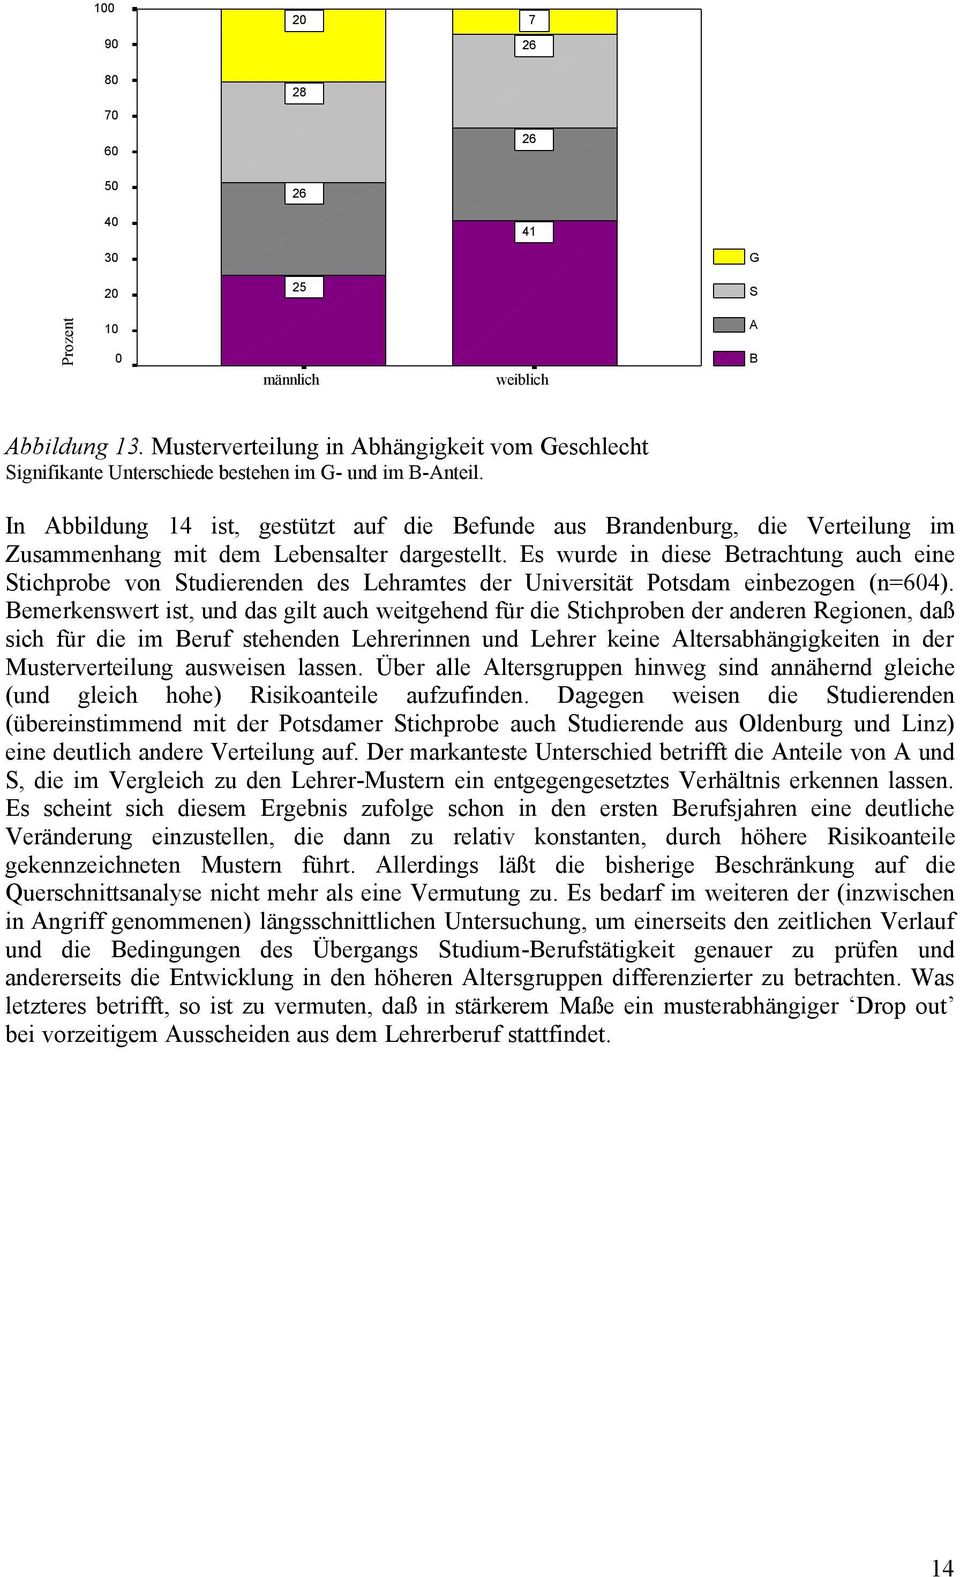 In Abbildung 14 ist, gestützt auf die Befunde aus Brandenburg, die Verteilung im Zusammenhang mit dem Lebensalter dargestellt.